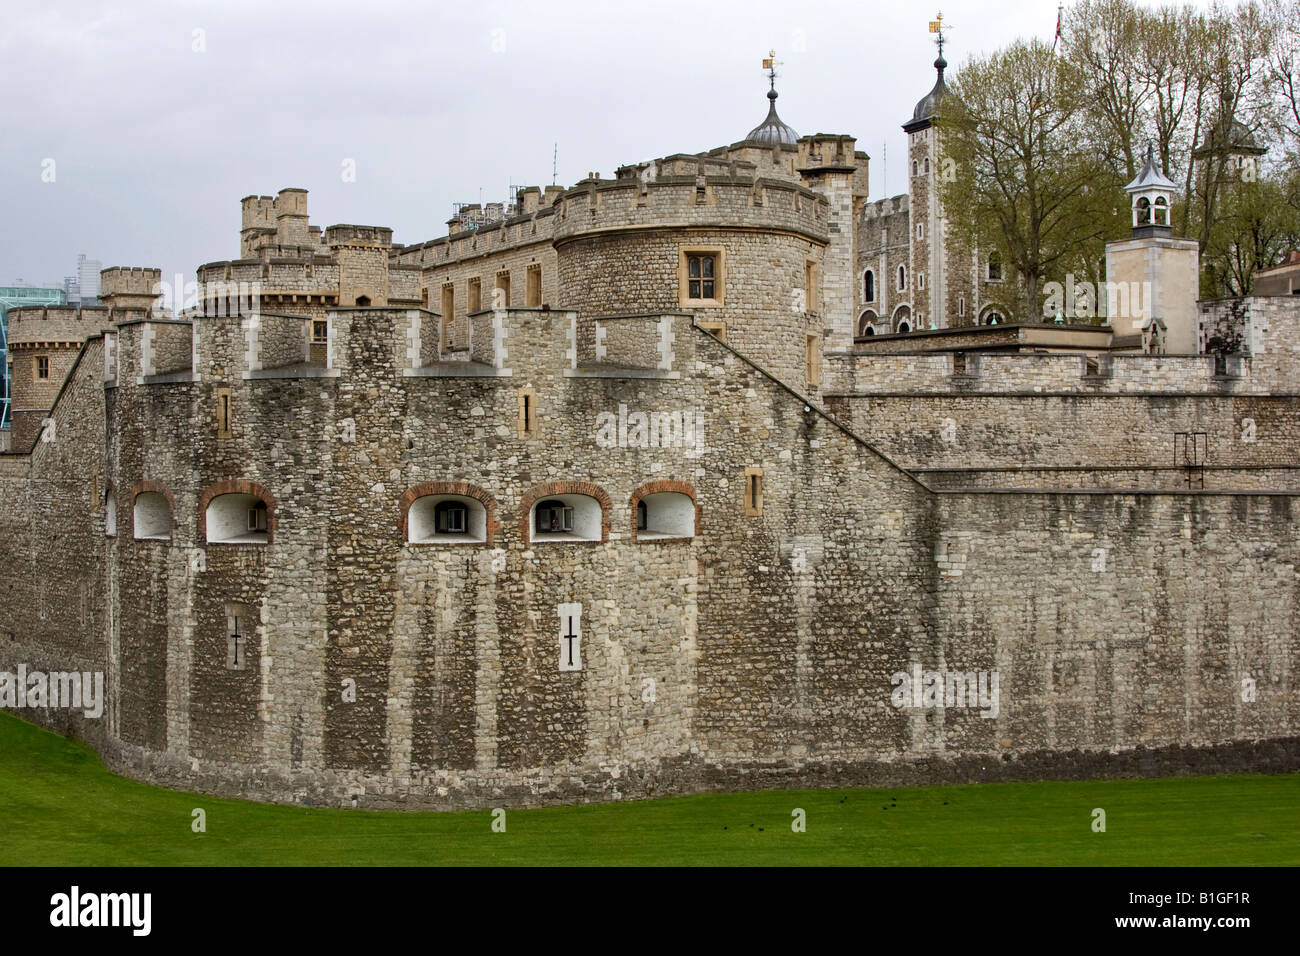 Tower of London, historische mittelalterliche Festung und Palast, London England Stockfoto